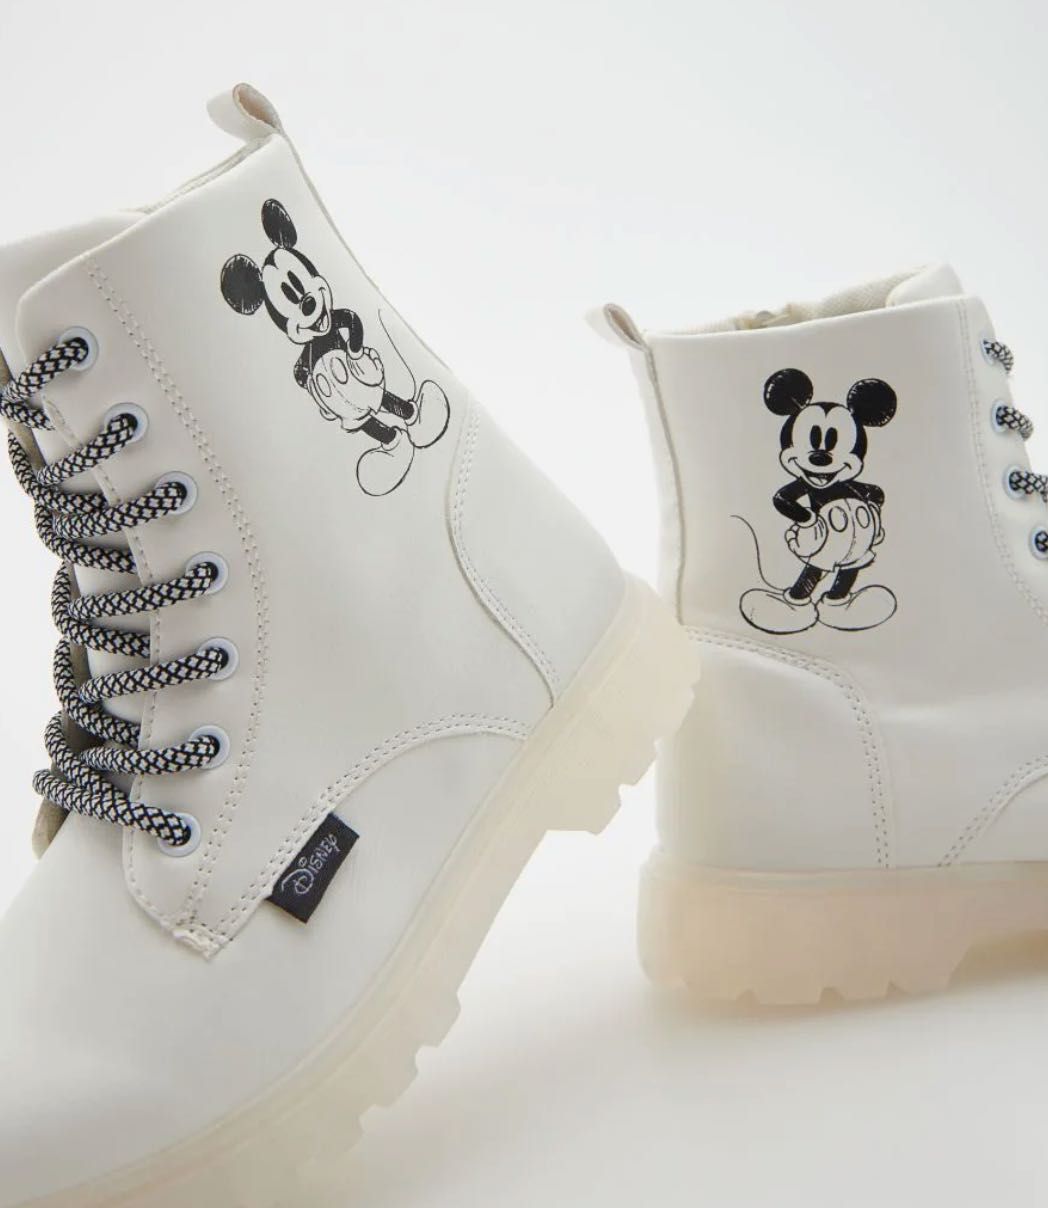 Białe botki Mickey Mouse, Myszka Miki NOWE rozmiar 30